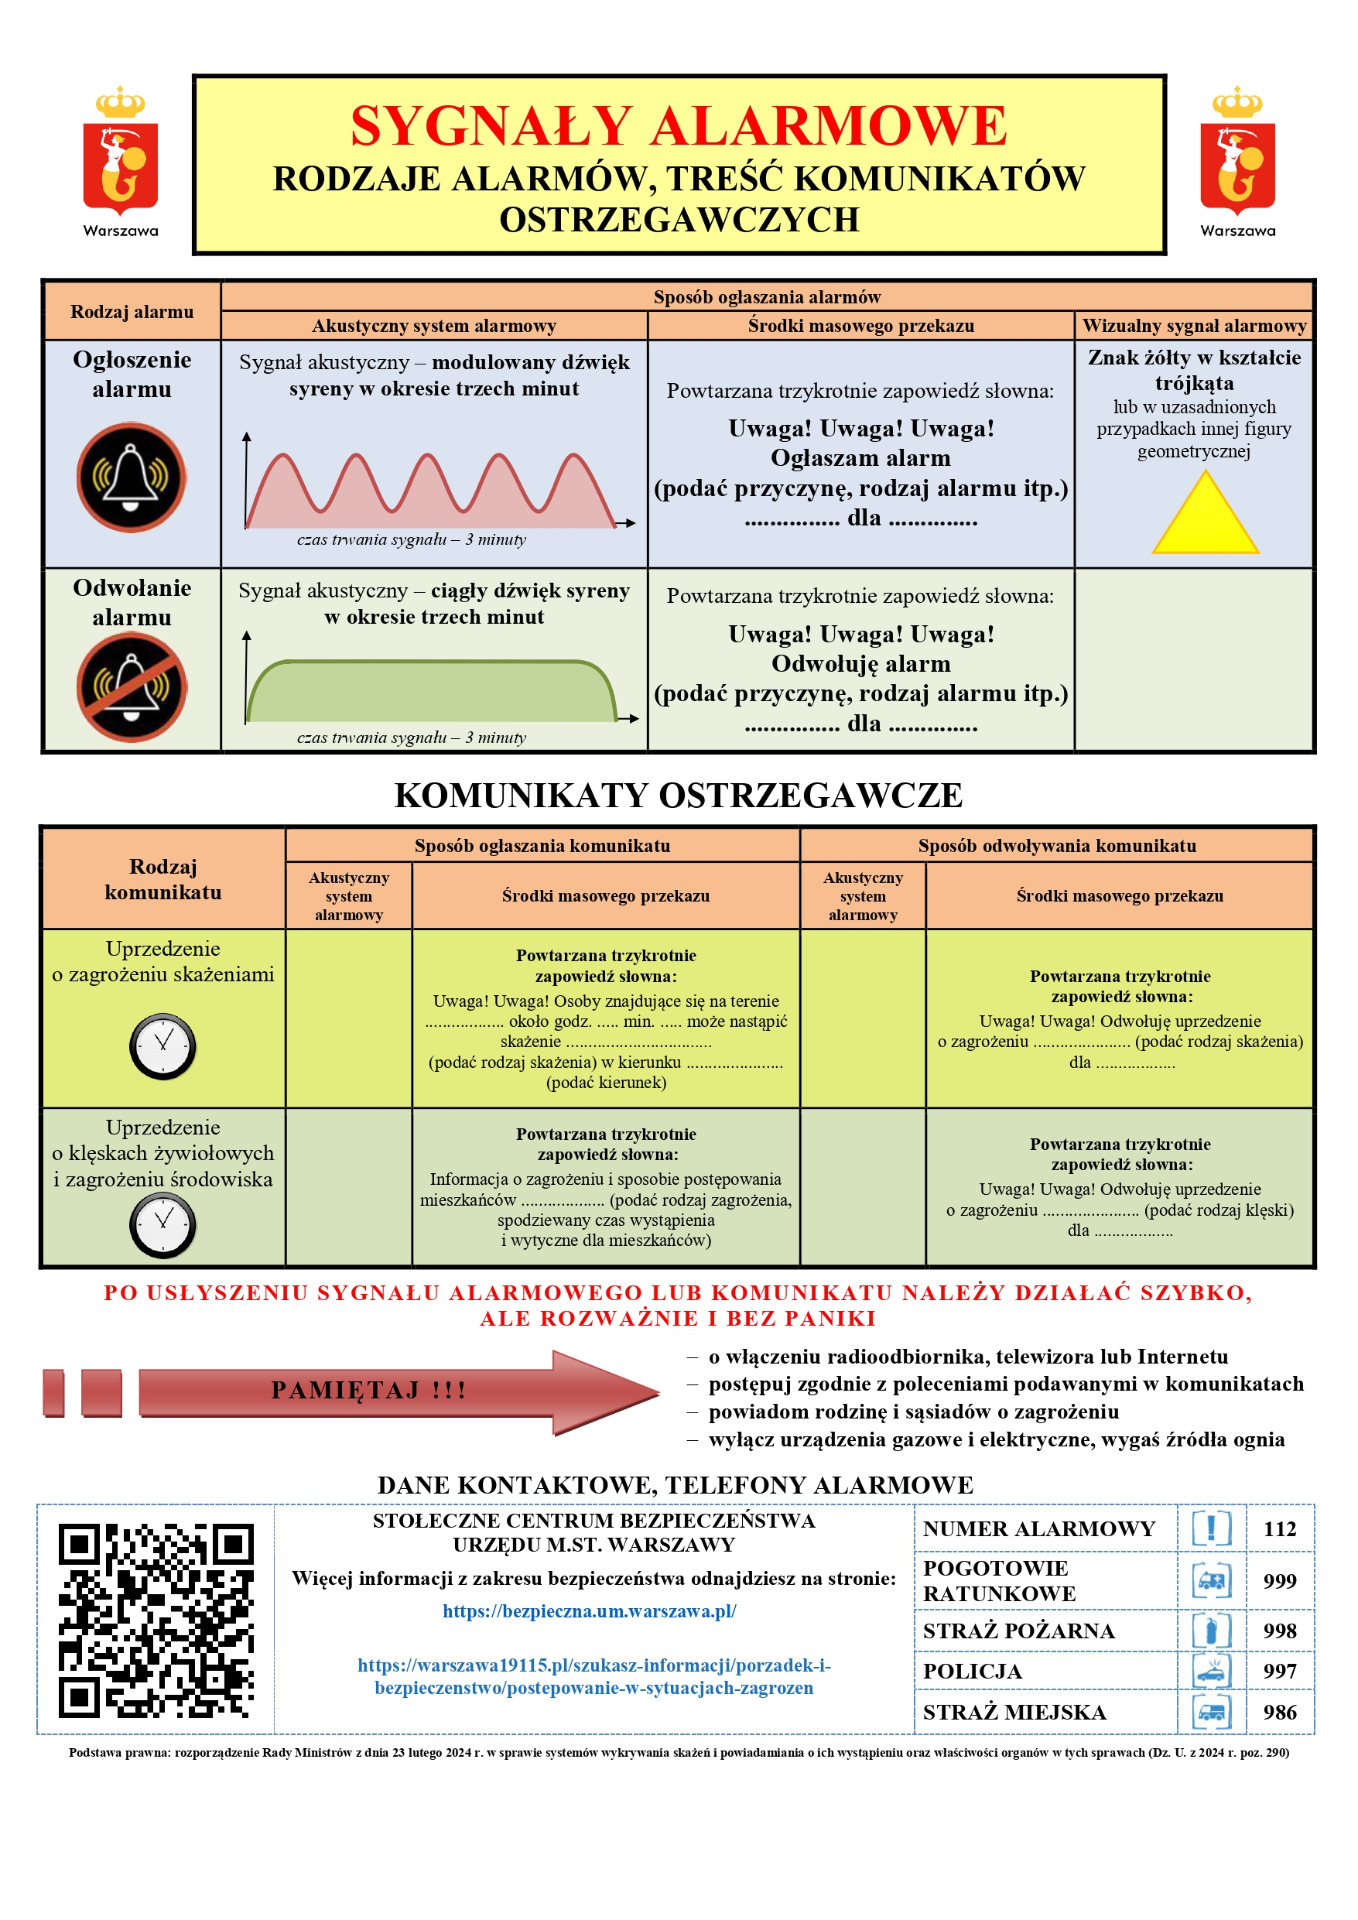 Zaktualizowana tabela sygnałów i komunikatów alarmowych - Obrazek 1